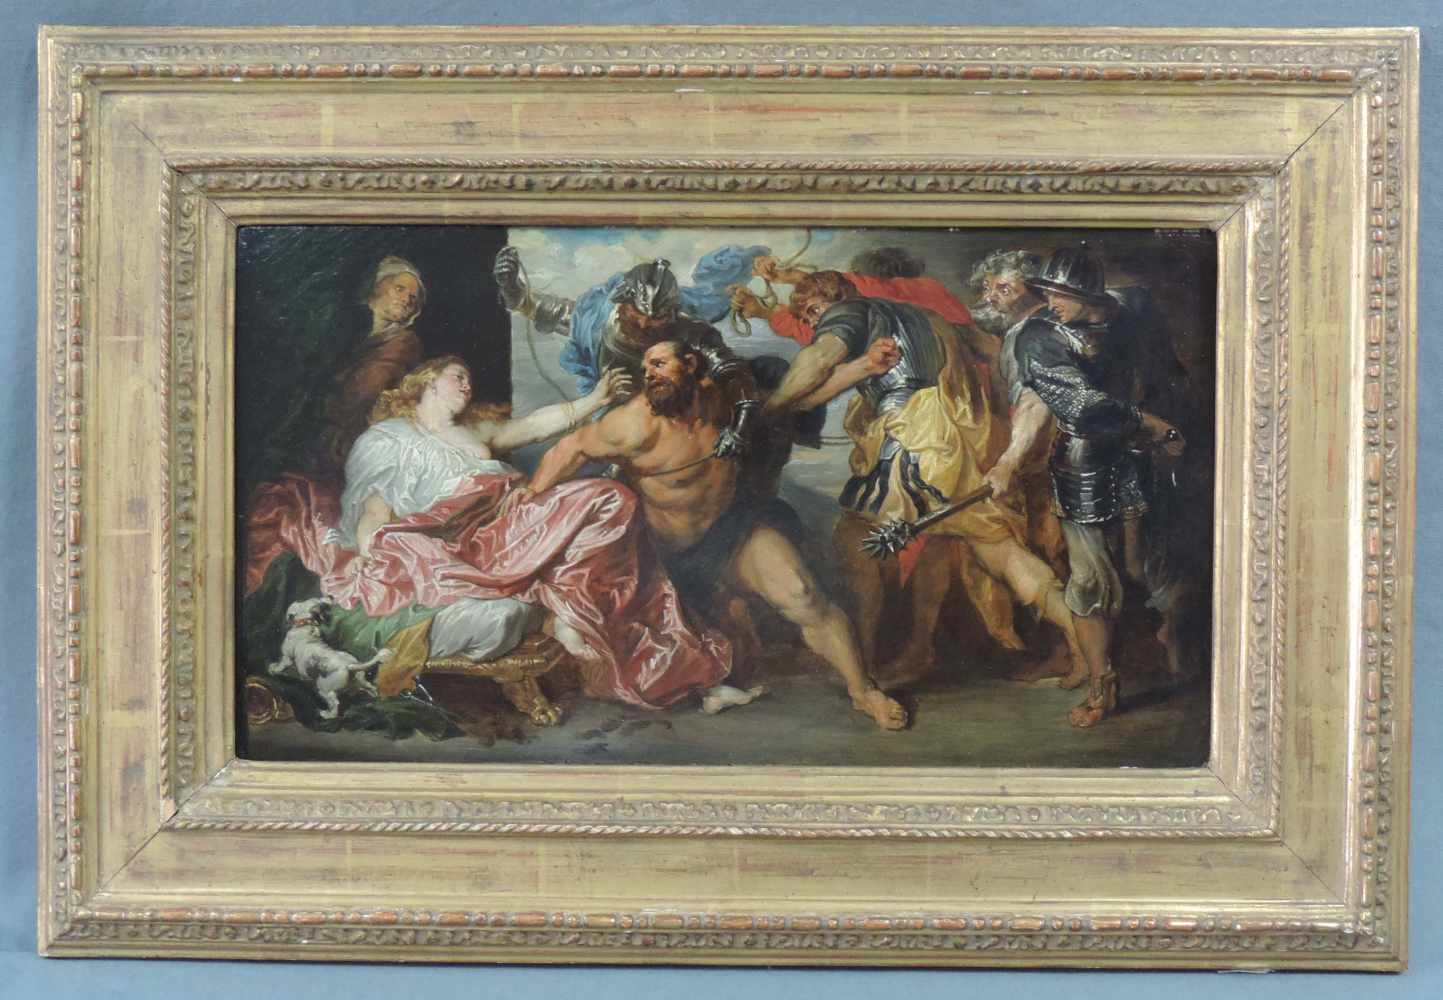 Nach Anthonius VAN DYCK. Samson and Delilah. 21 cm x 40 cm. Gemälde, Öl auf Holz. Ausgeführt in Wien